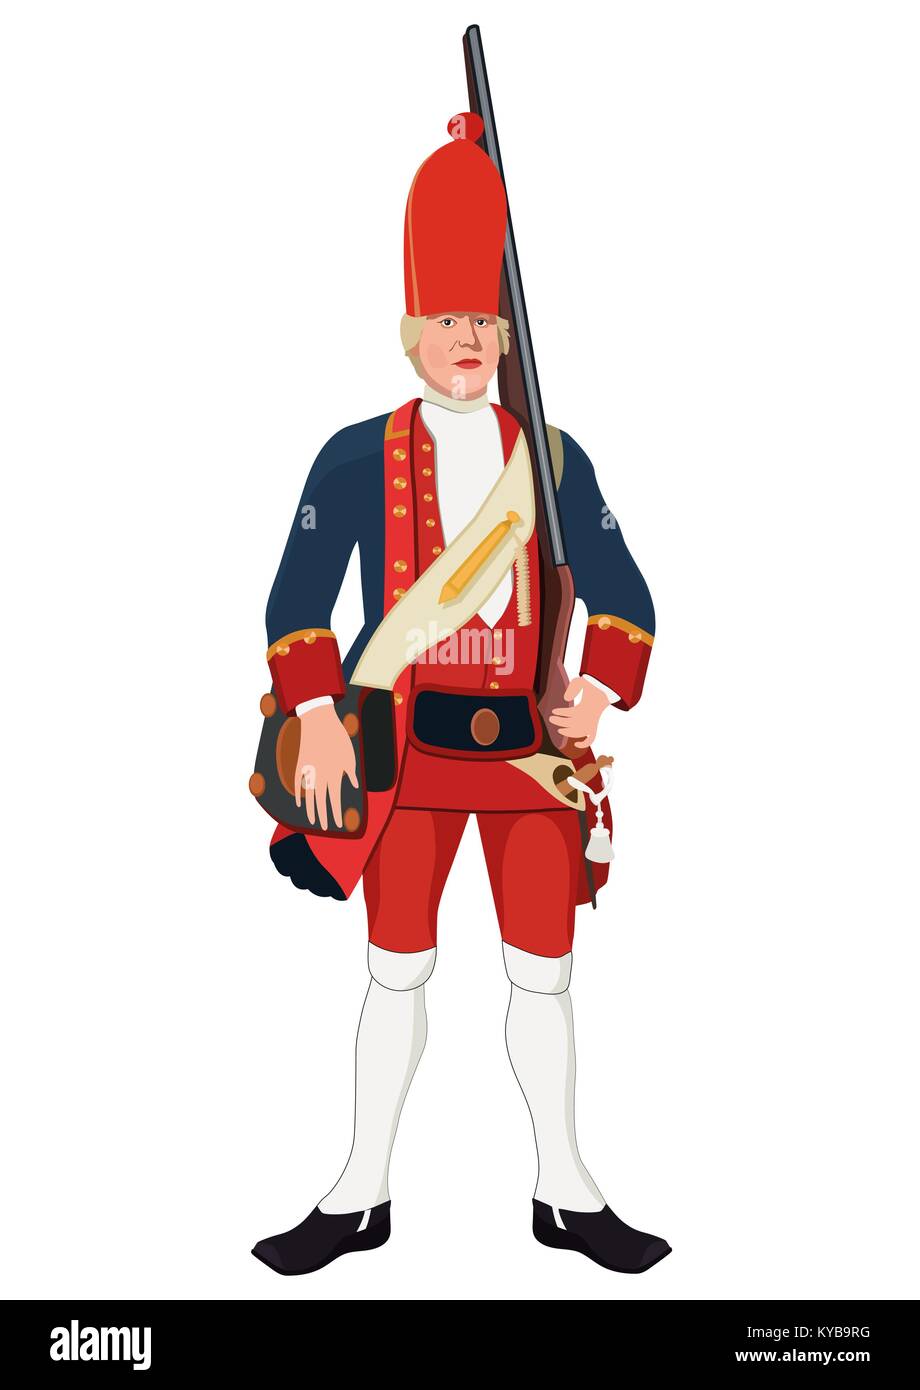 Granatiere, disegno vettoriale. Soldato vestito militare nella vecchia uniforme con un fucile sulla spalla, dipinto ritratto. Isolato su sfondo bianco Illustrazione Vettoriale